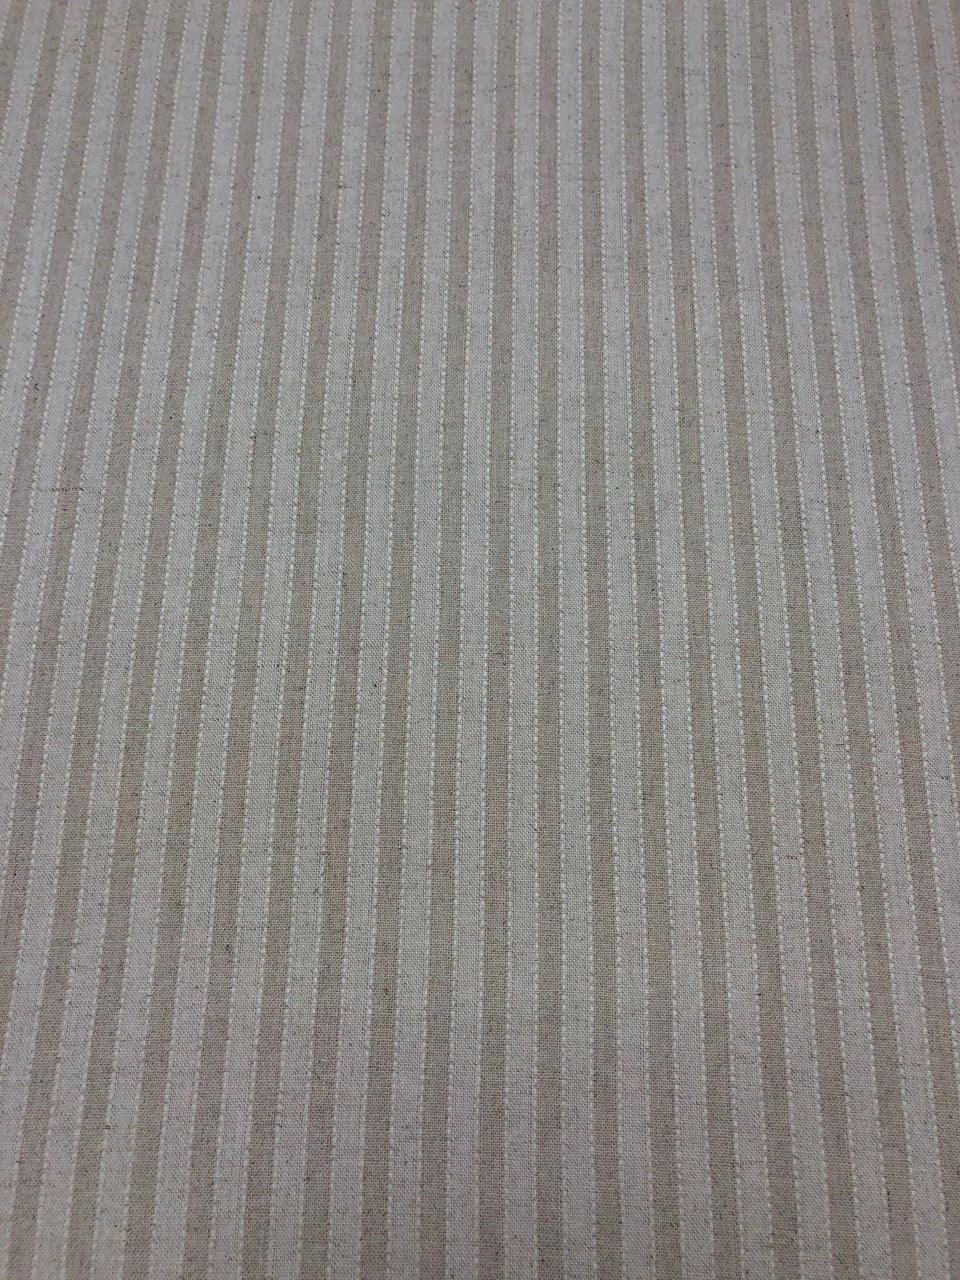 Oatmeal Stripe 3/8" - Linen